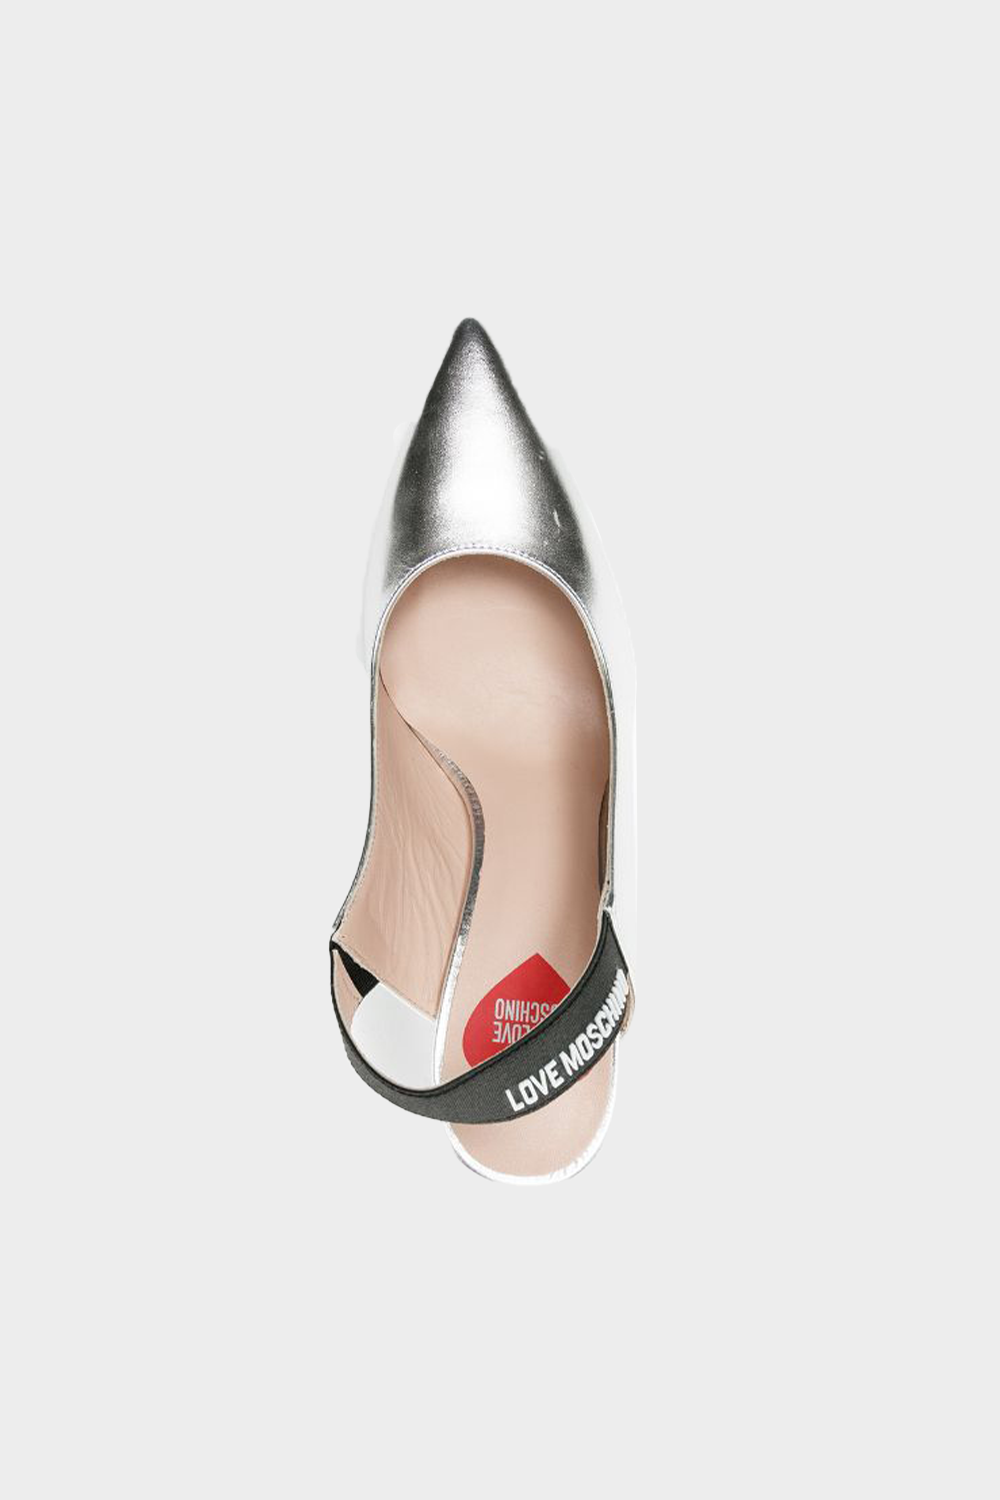 נעלי עקב לנשים בצבע כסוף MOSCHINO MOSCHINO Vendome online | ונדום .